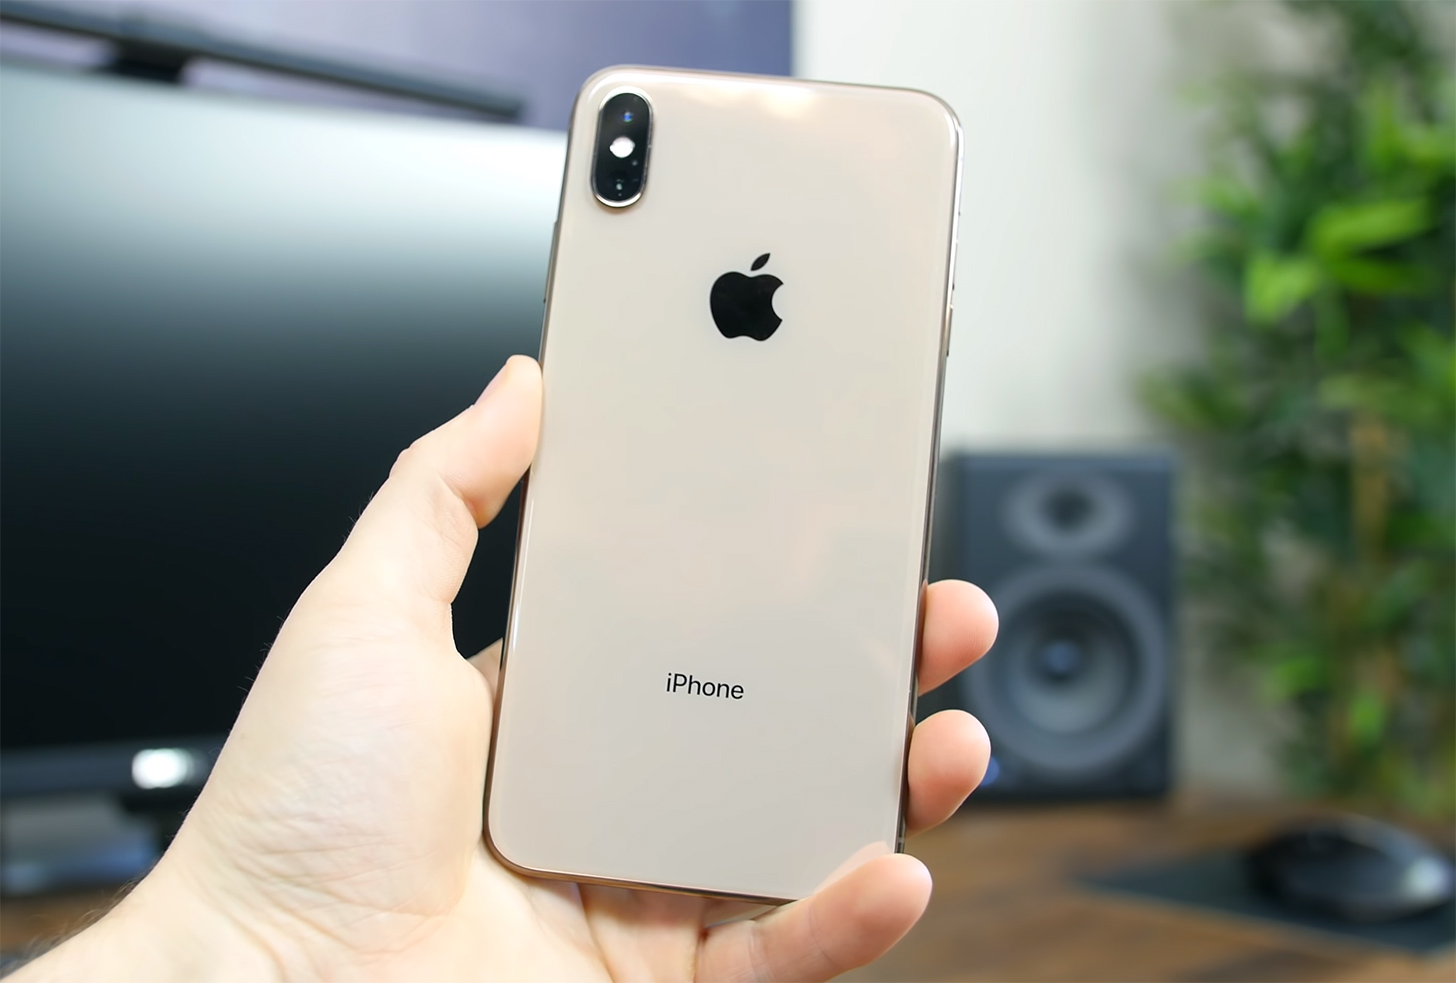 Appleновые iPhone могут пропустить функцию обратной беспроводной зарядки